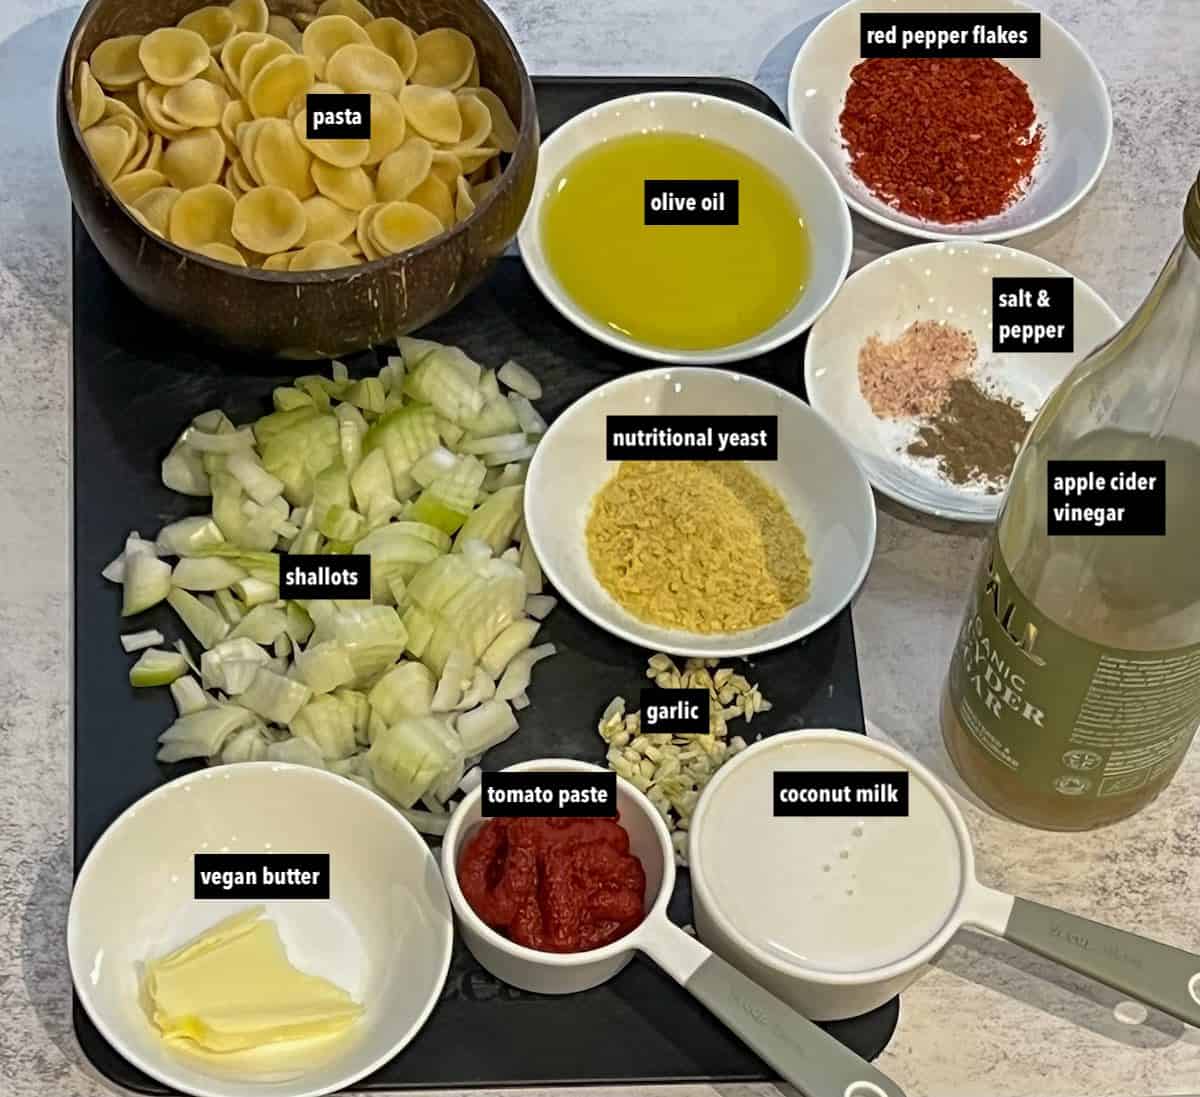 Ingredients to make the vegan Gigi Hadid pasta recipe